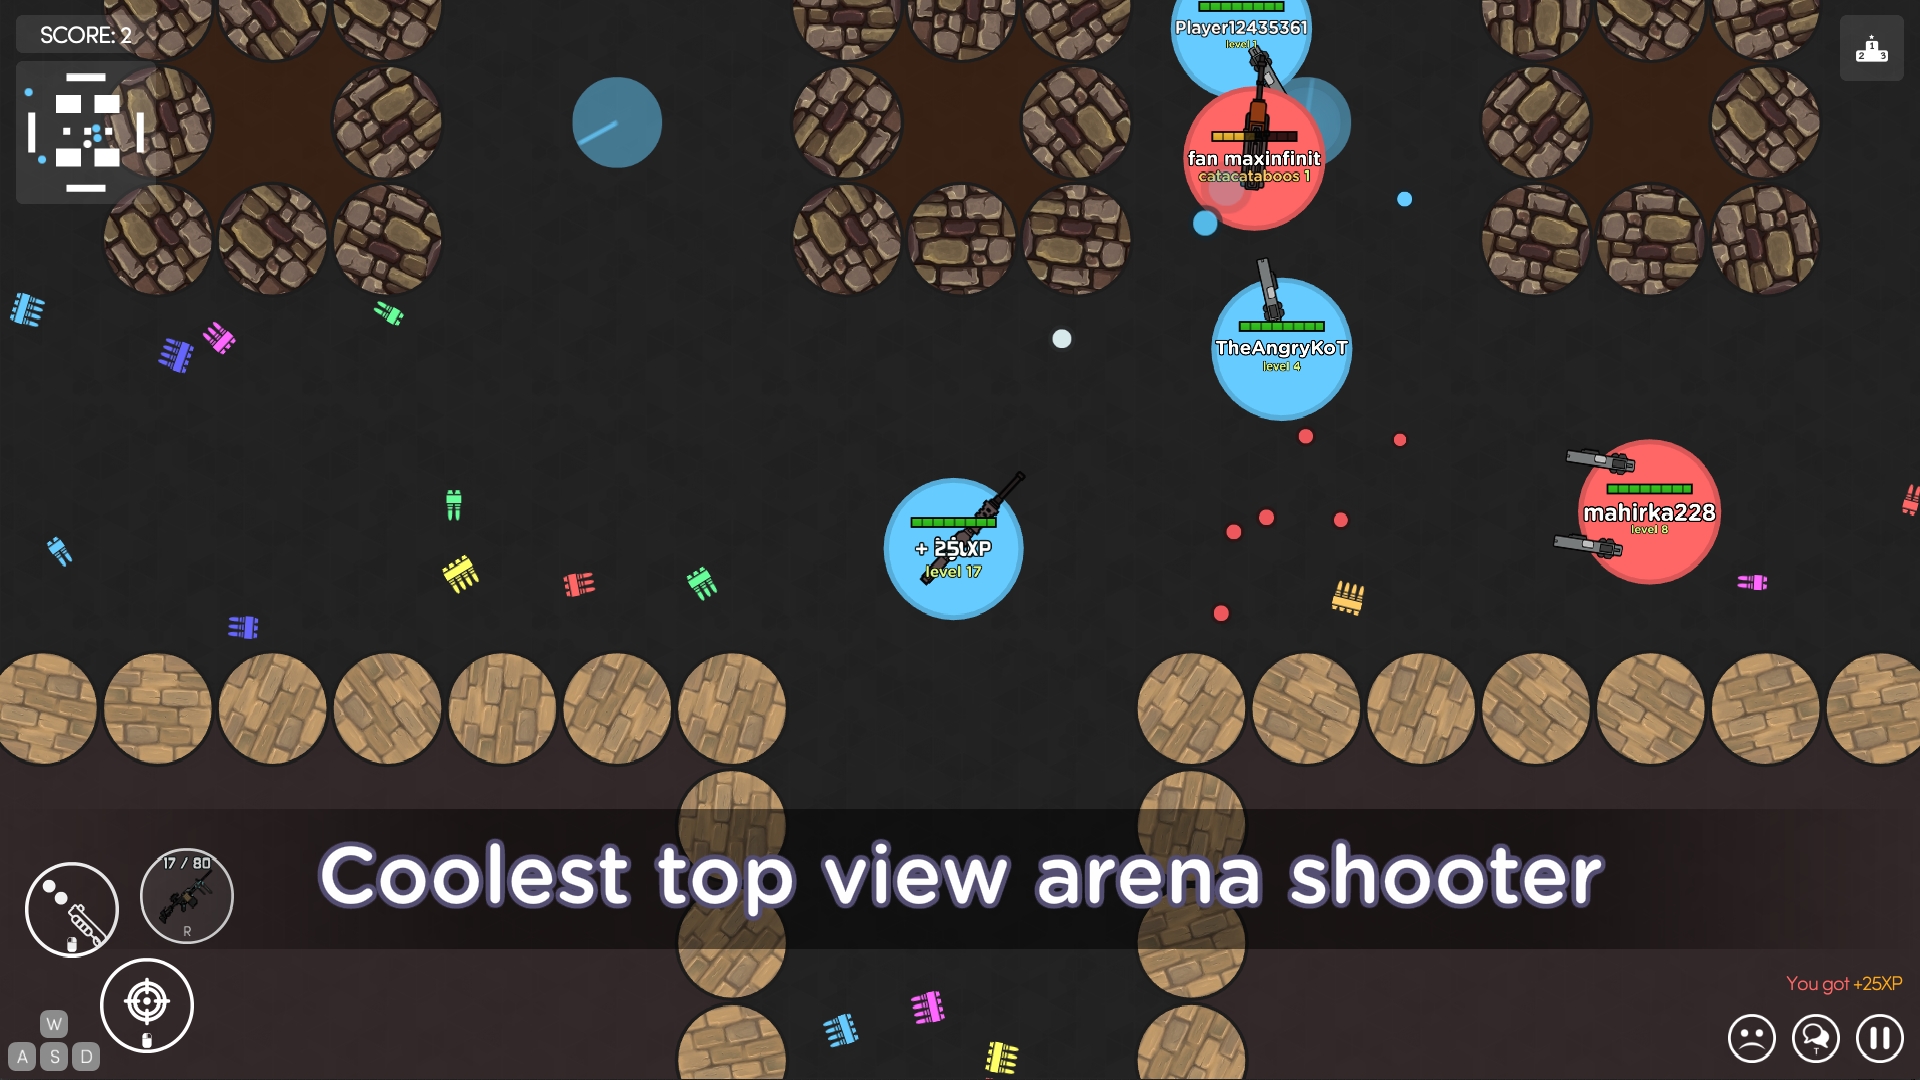 Strike.is: The Game screenshot